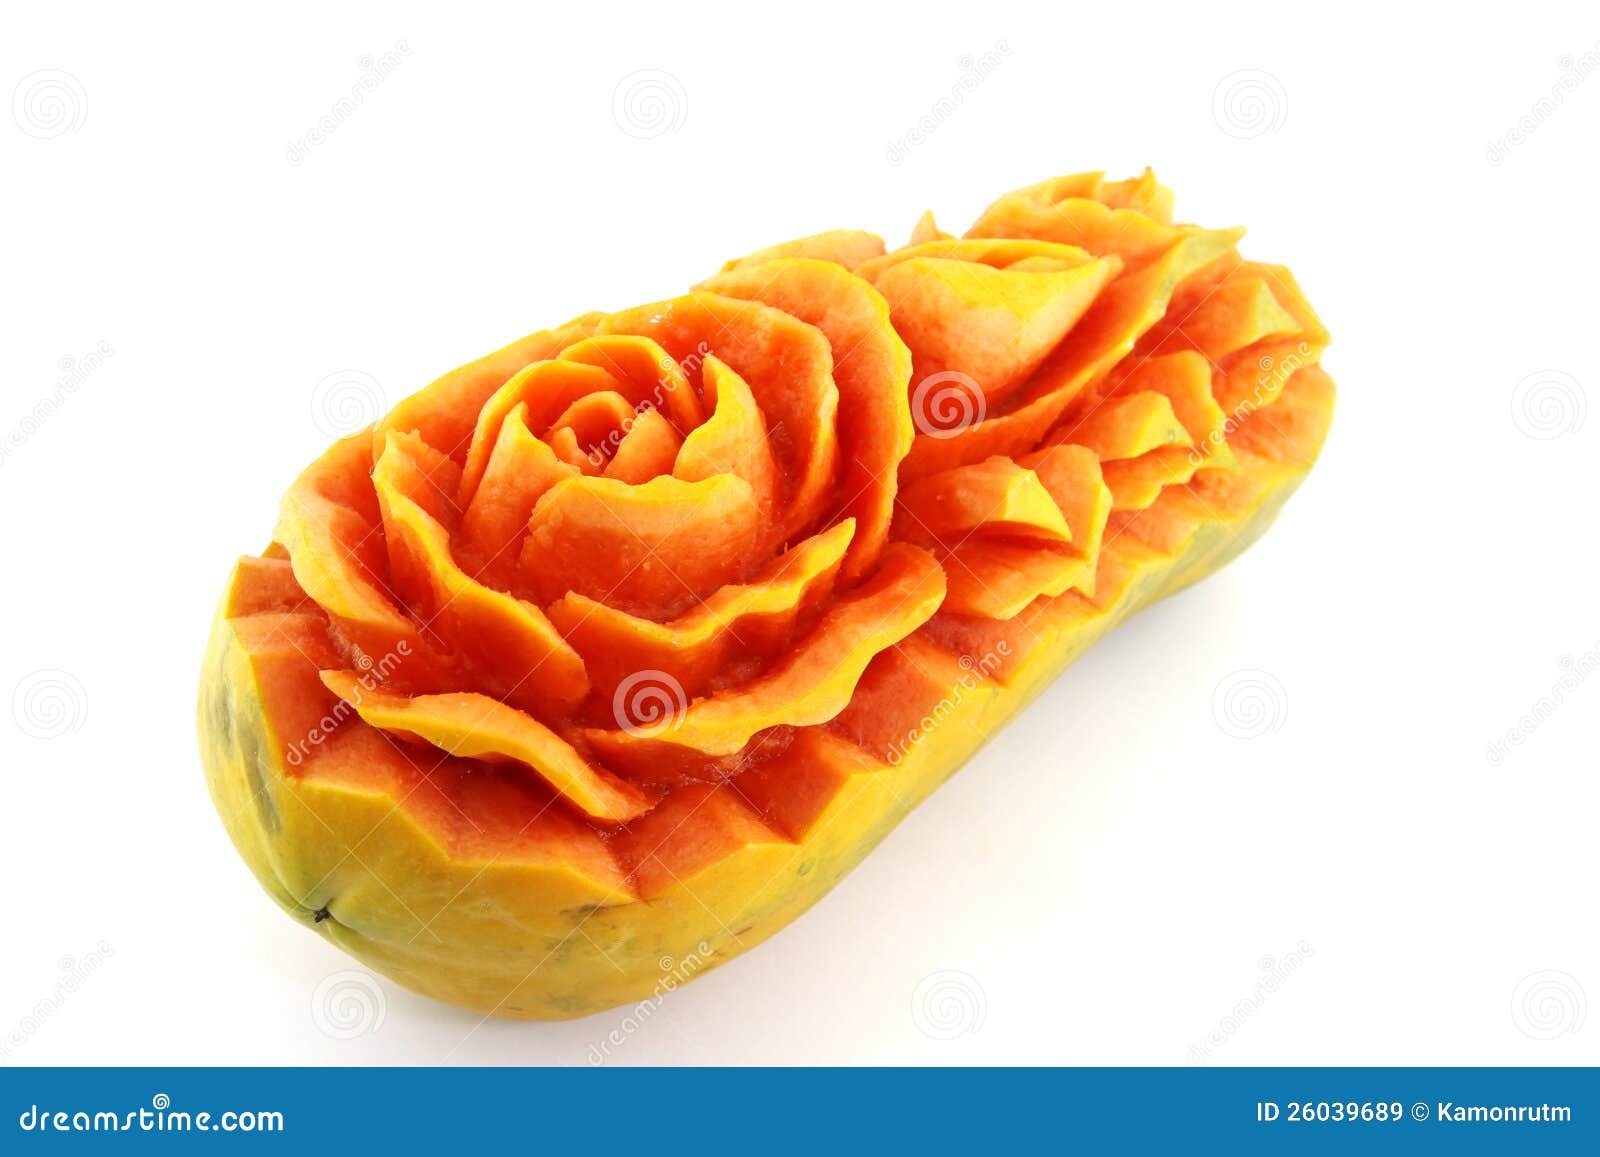 Fruit Carving, Papaya Flower Detail Stock Image - Image of papaya ...